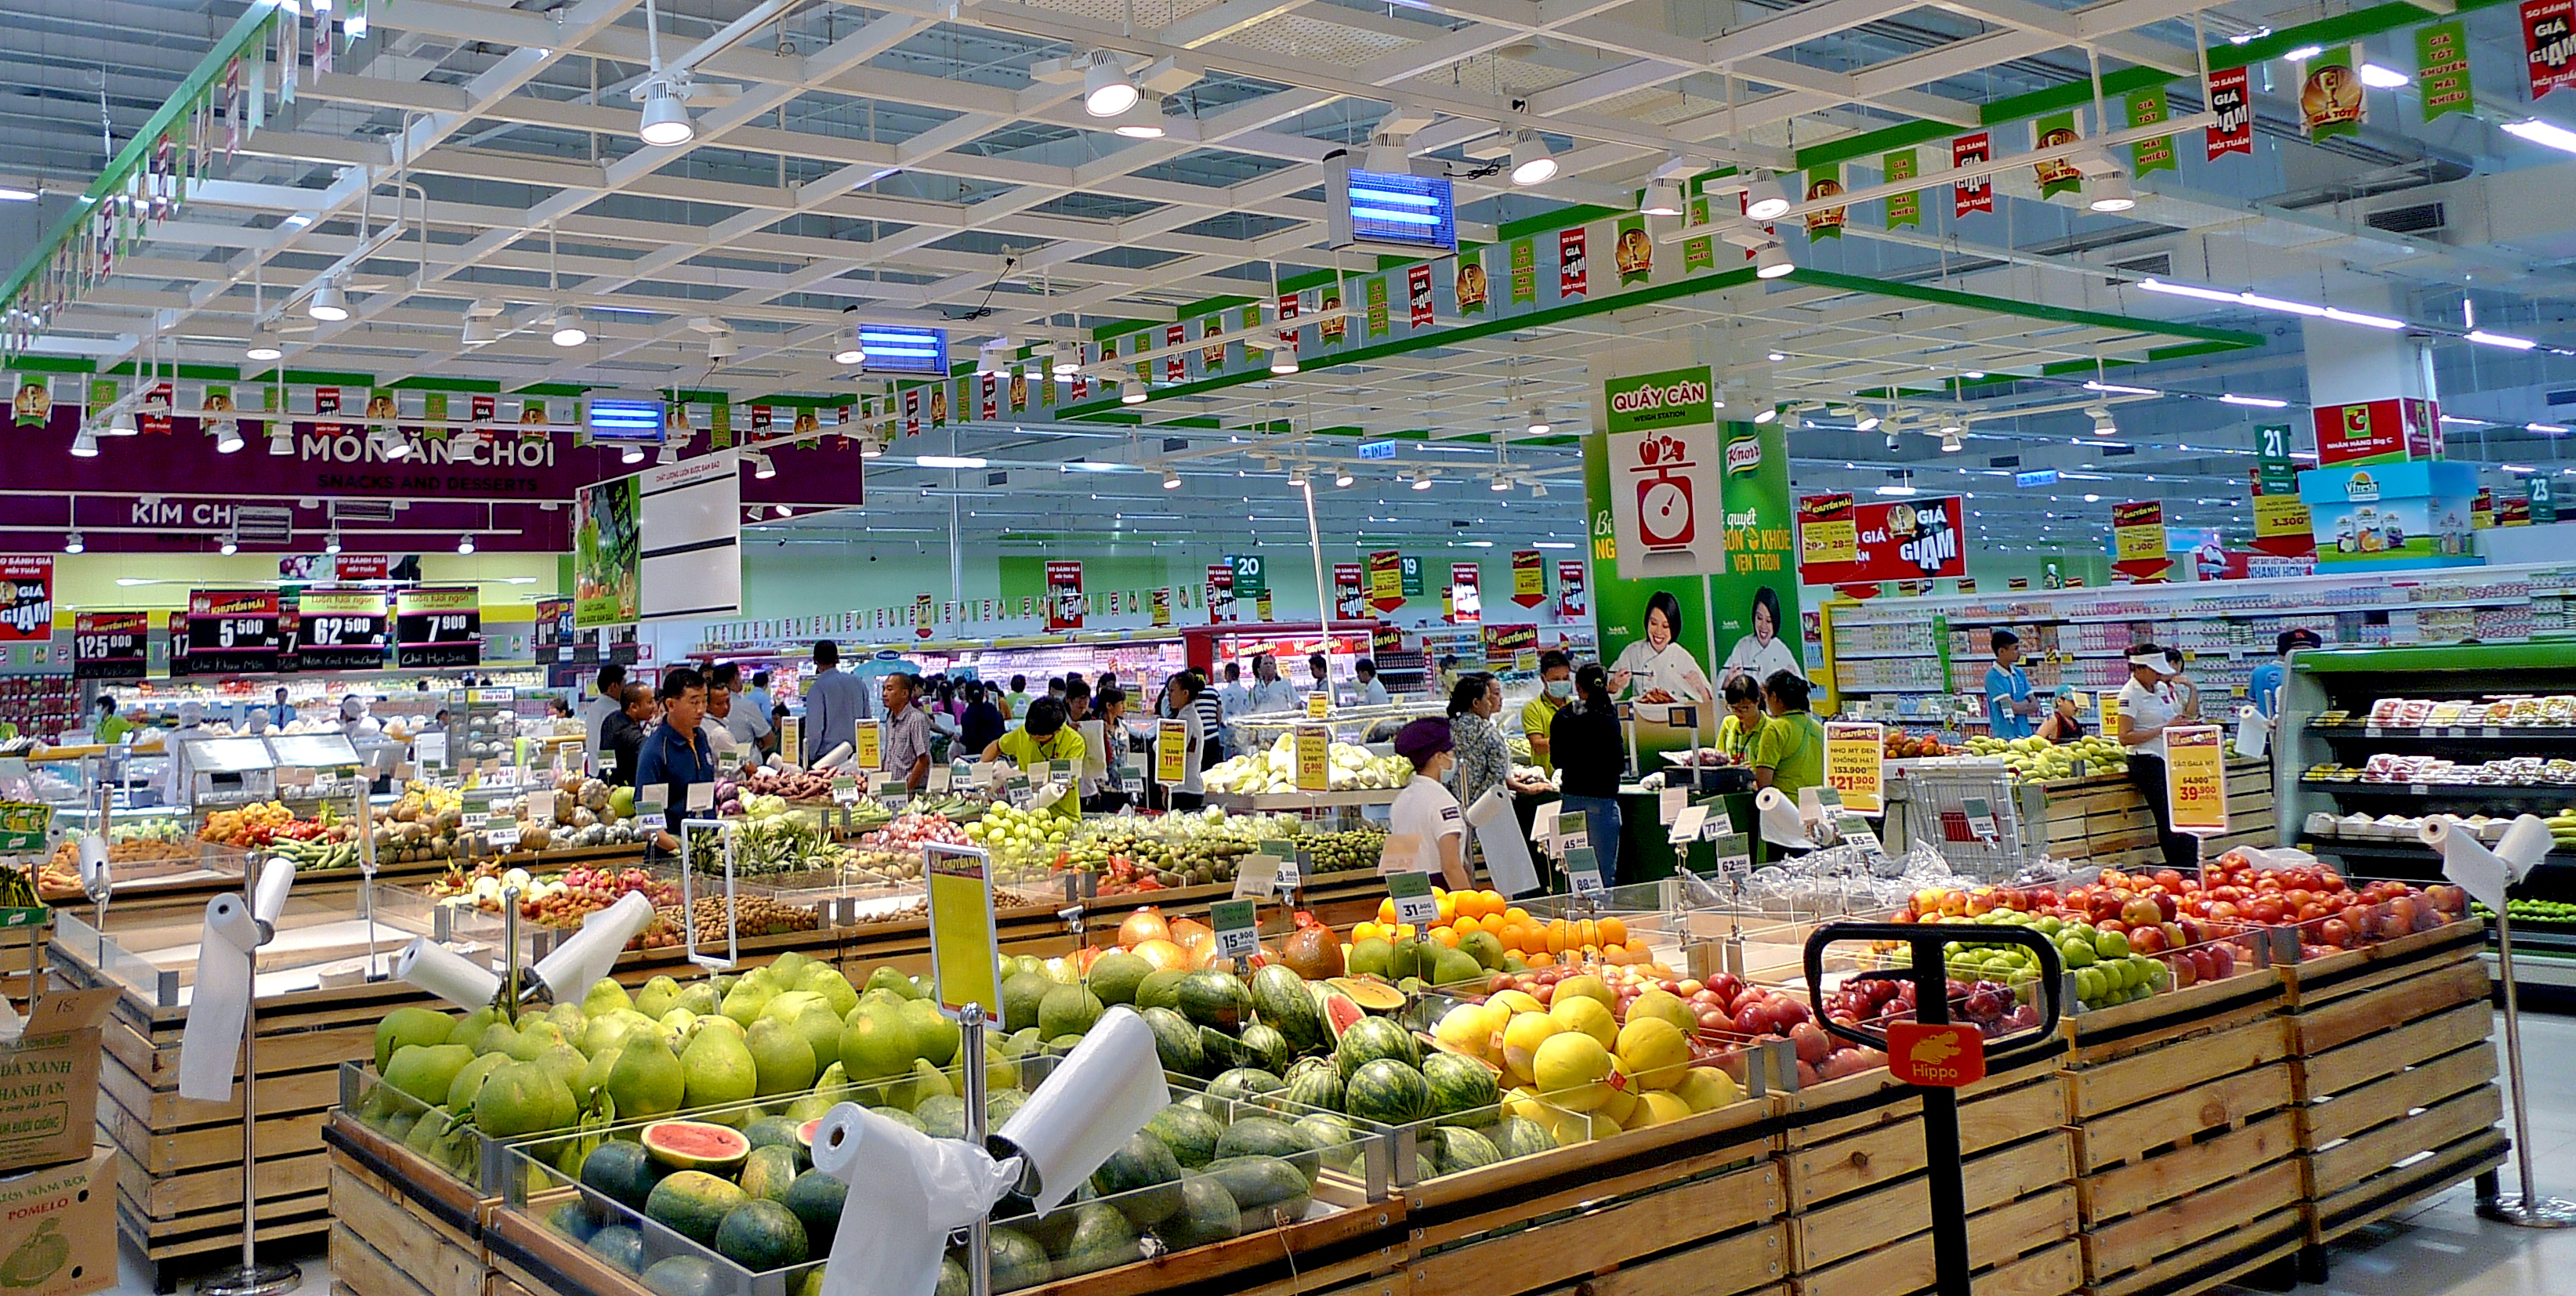 Đại siêu thị Big C Nha Trang - diện mạo mới cho xứ sở trầm hương